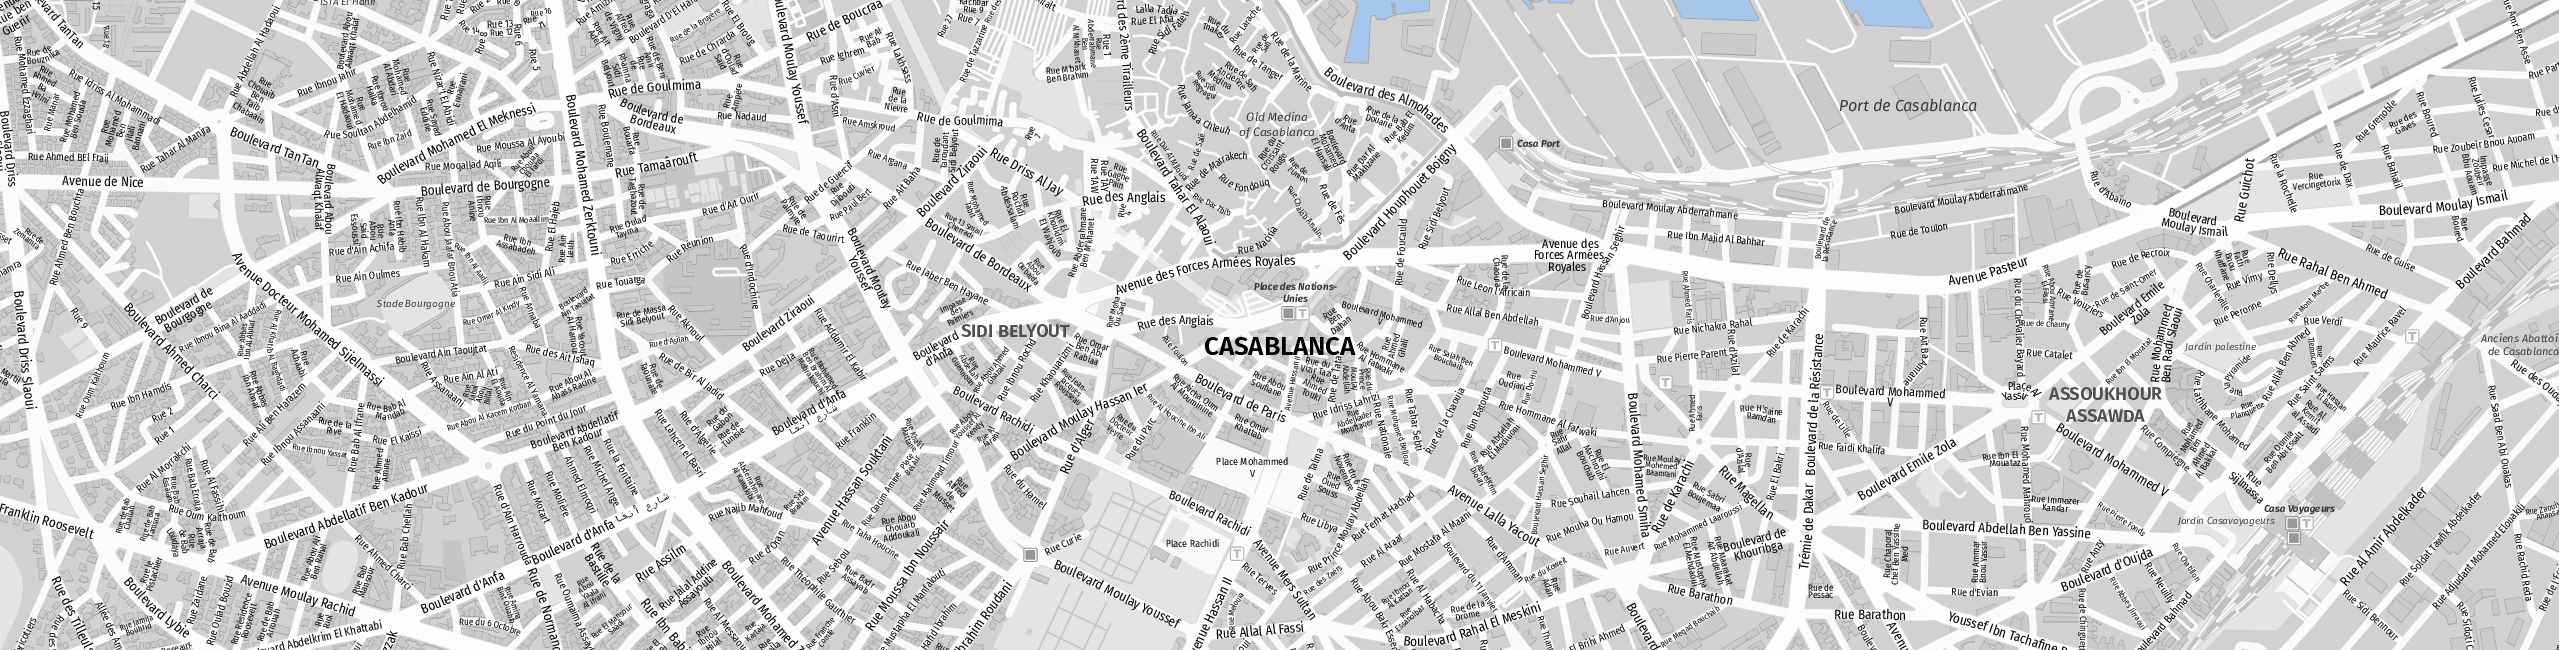 Stadtplan Casablanca zum Downloaden.